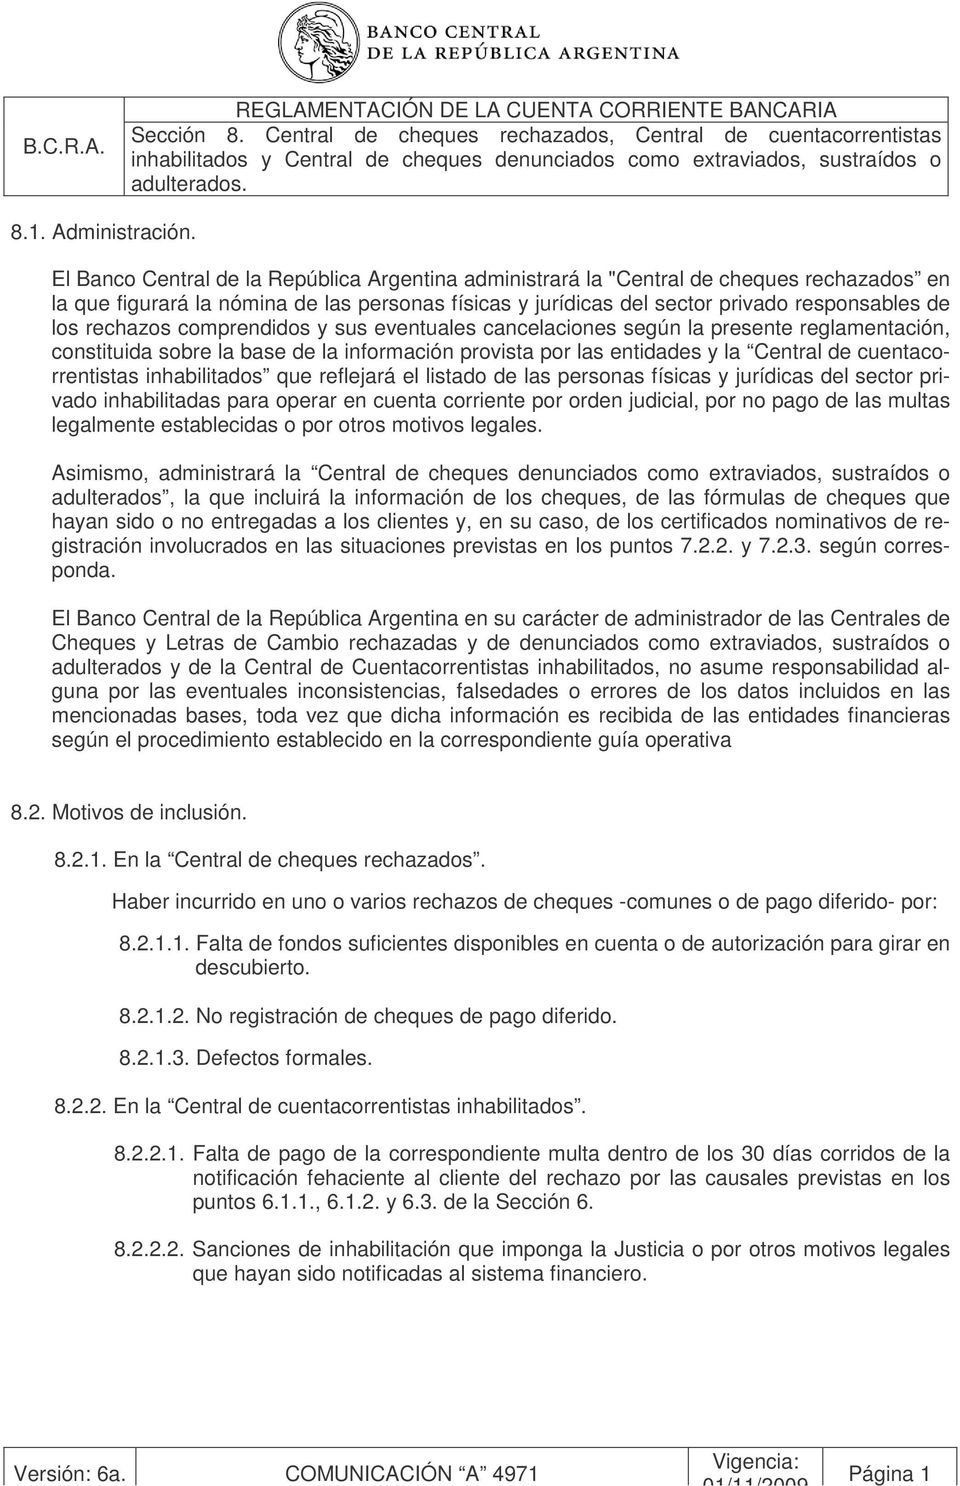 El Banco Central de la República Argentina administrará la "Central de cheques rechazados en la que figurará la nómina de las personas físicas y jurídicas del sector privado responsables de los